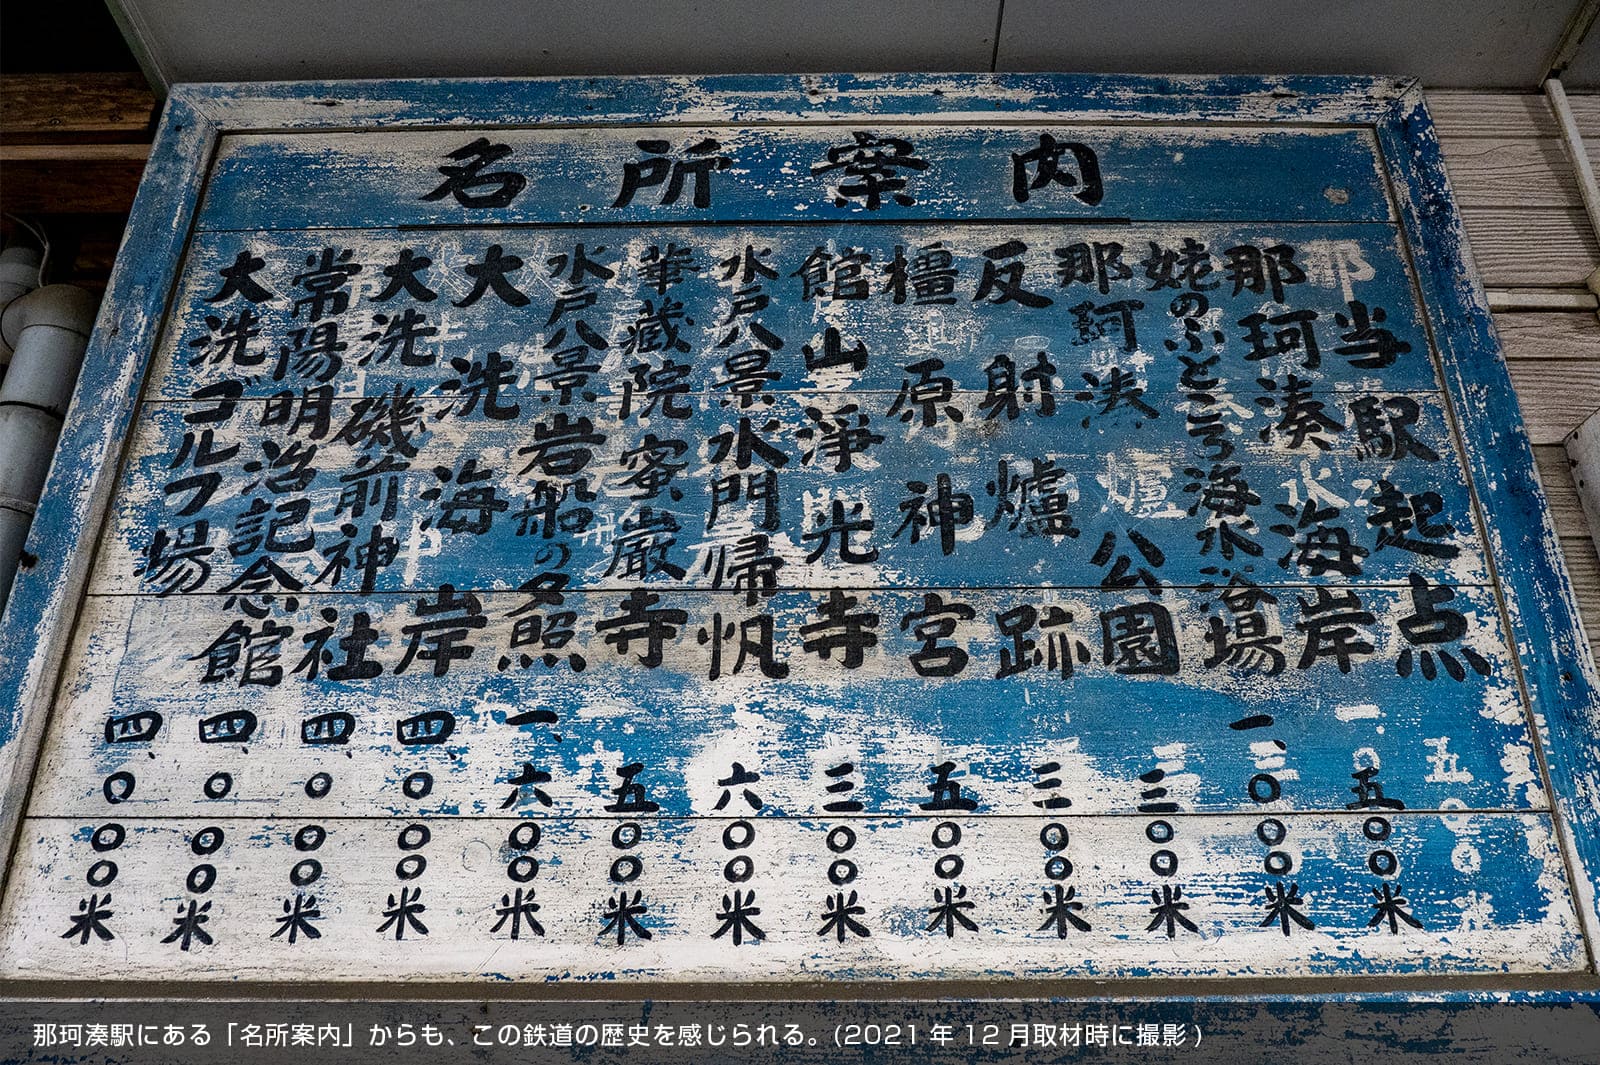 那珂湊駅にある「名所案内」からも、この鉄道の歴史を感じられる。(2021年12月取材時に撮影)